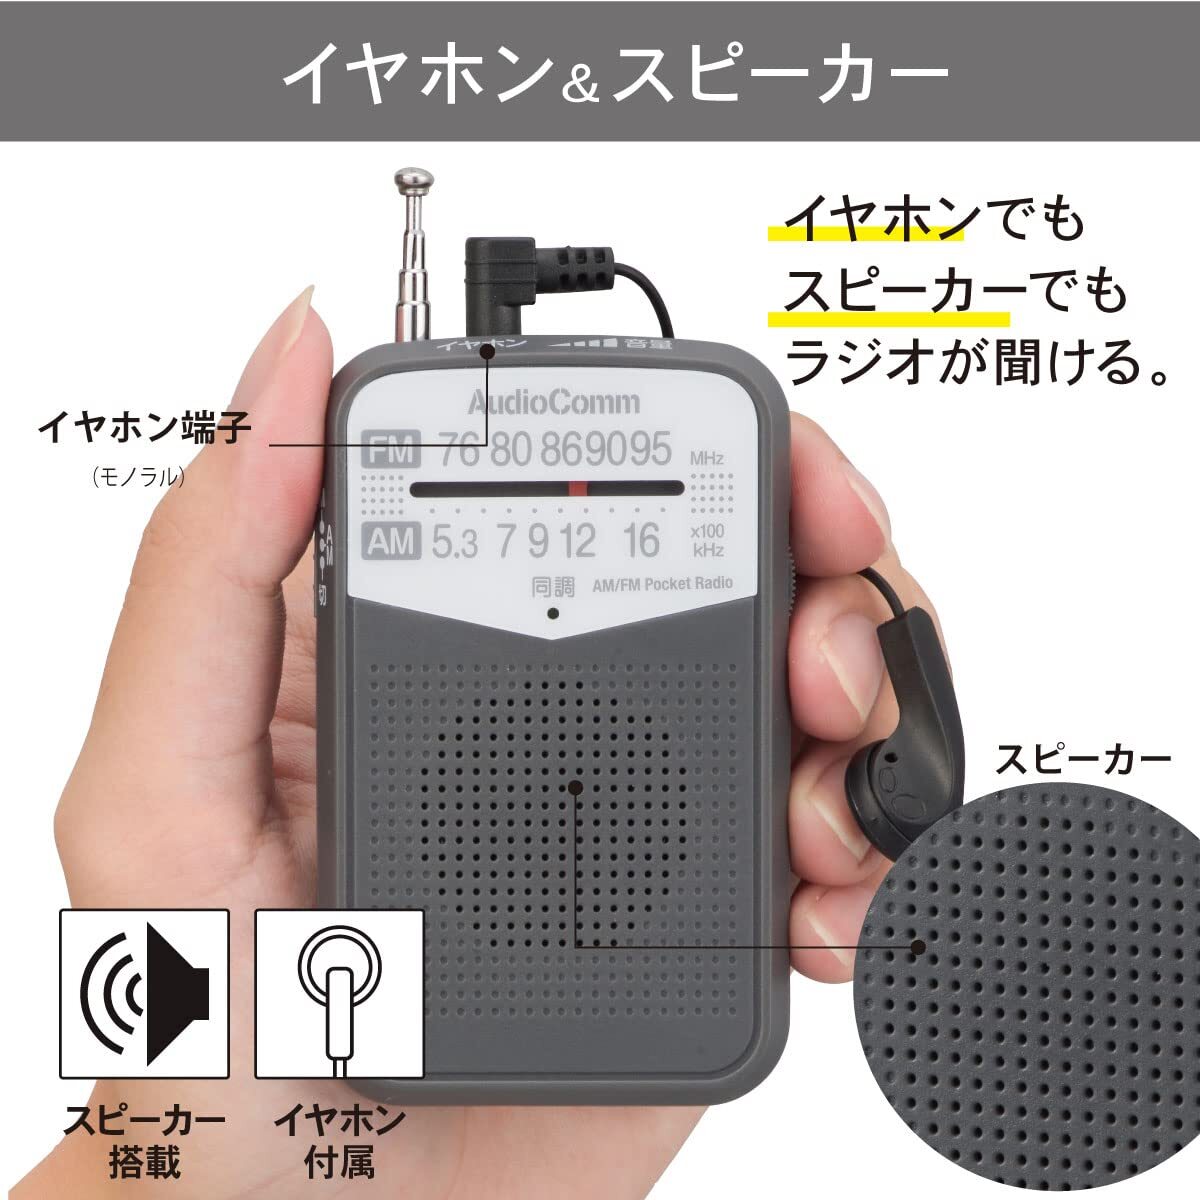 【数量限定】03-7242 RAD-P133N-H グレー 電池式 コンパクトラジオ ポータブルラジオ AM/FMポケットラジオ の画像4